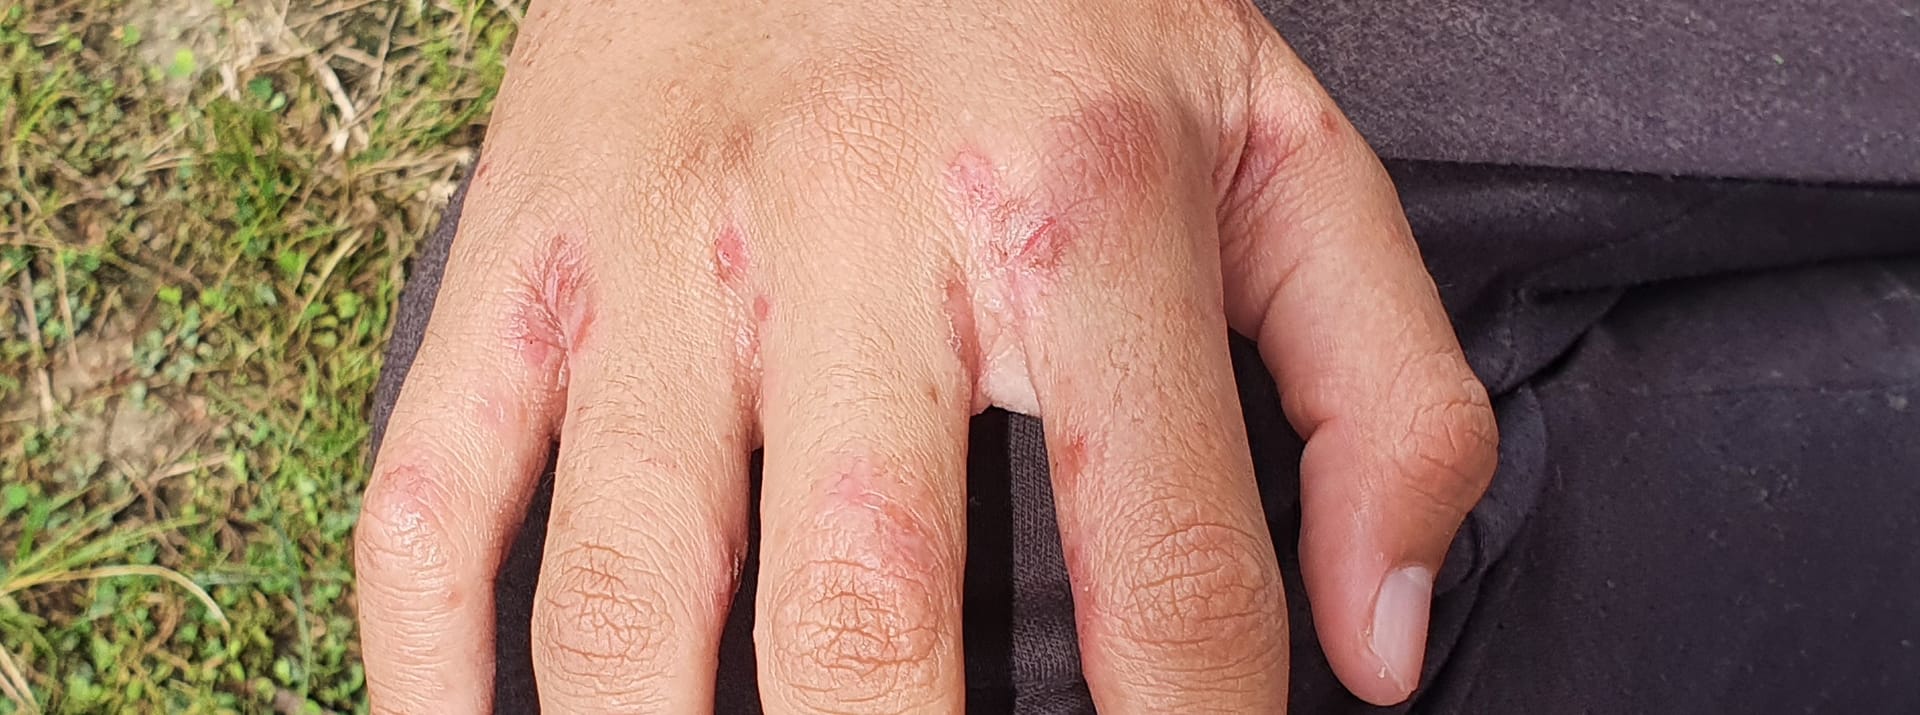 Sichtbare Krätze-Symptome auf einer Hand